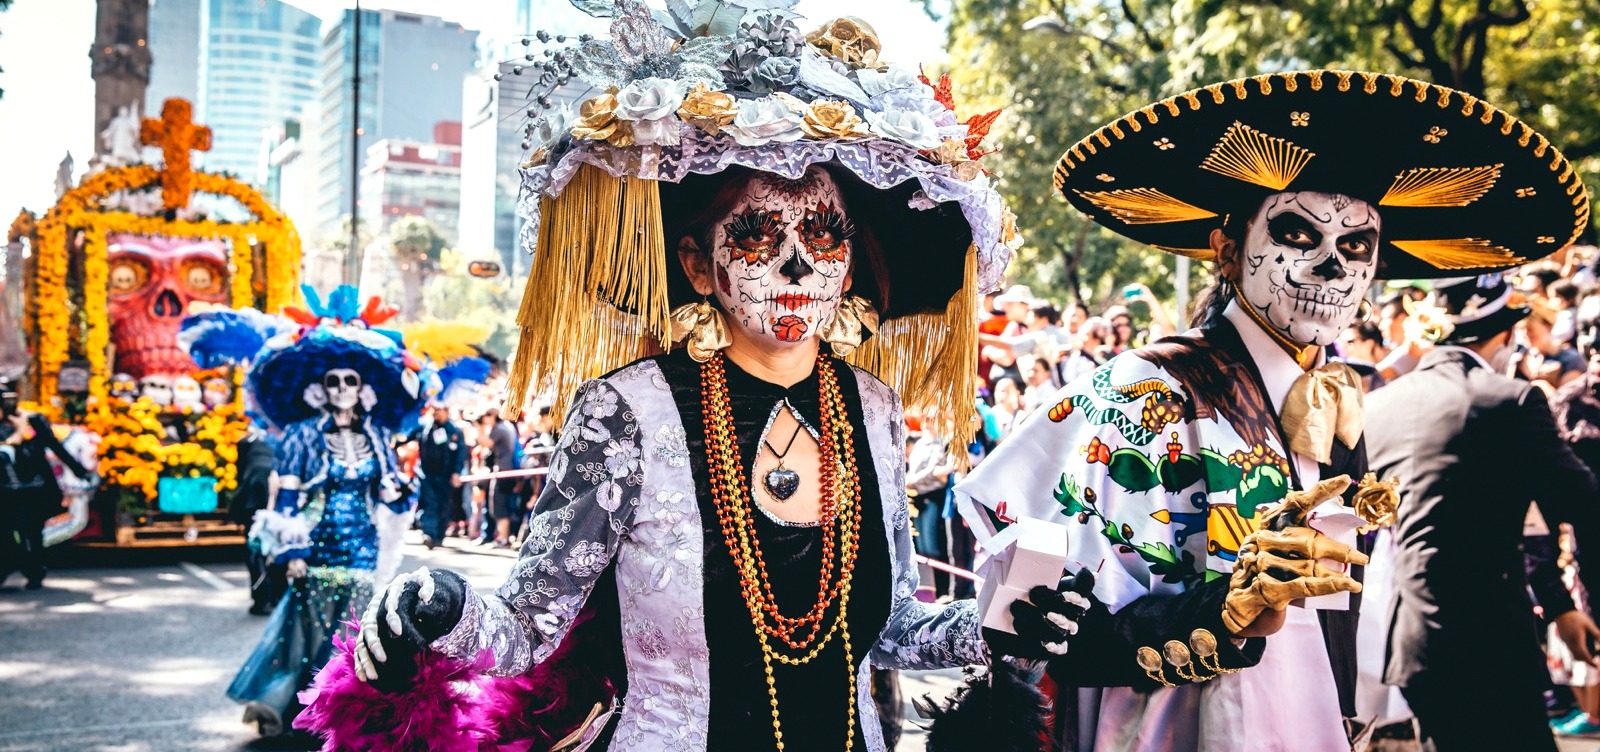 Arte, tradición y cultura, se unen en celebración del Día de los Muertos en Toronto 